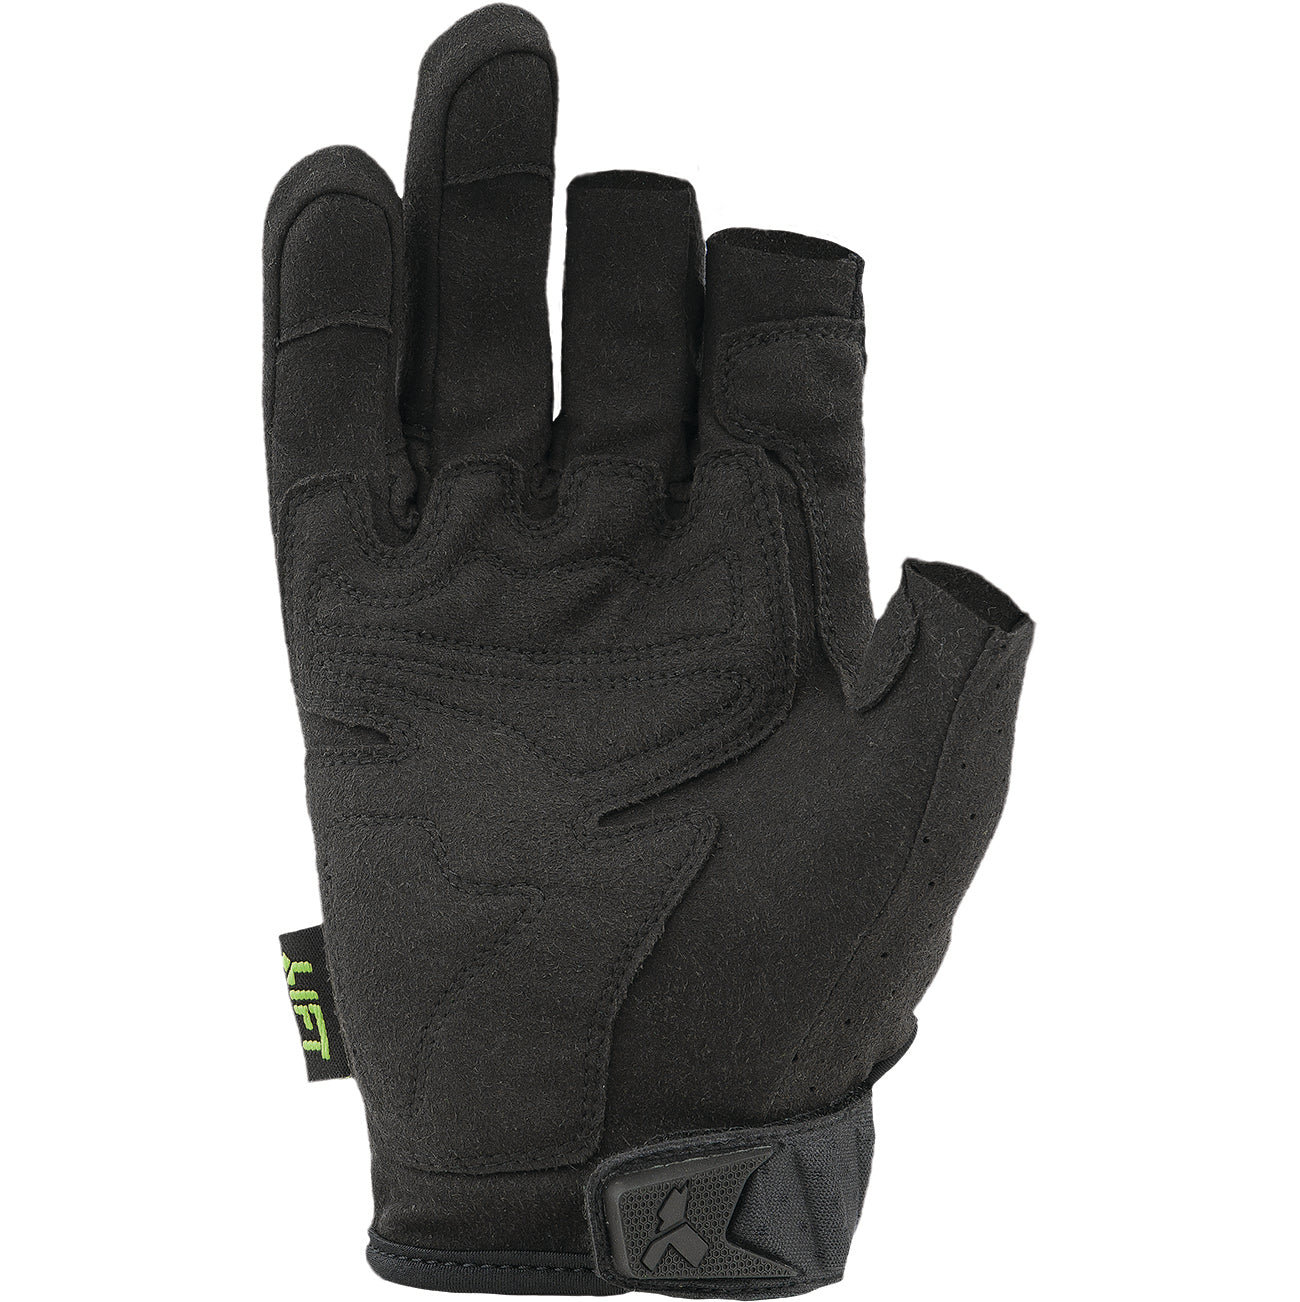 LIFT Safety - FRAMED Glove (Black/Black)